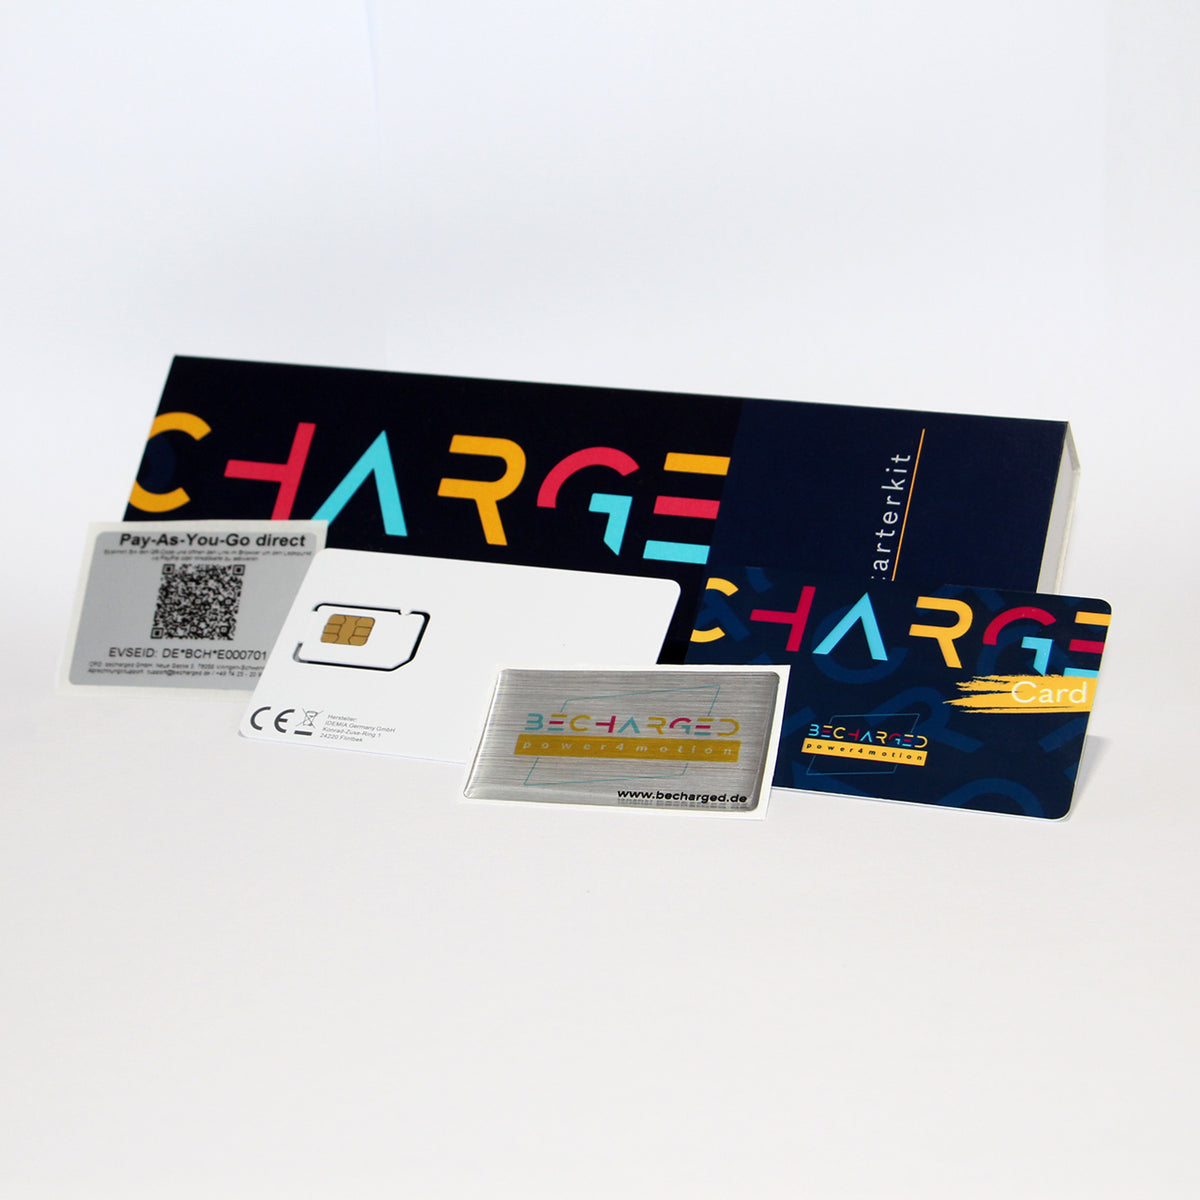 Ein länglicher, dunkelblauer Karton auf dem von links bis zur Mitte in großen gelben, roten und hellblauen Buchstaben "charge" steht. Ganz rechts steht von unten nach oben in weißen Buchstaben "Starterkit". Davor liegt von links nach rechts: ein QR-Code Label, eine SIM-Karte, ein Doming-Aufkleber mit dem becharged Logo und eine RFID-Karte. Die RFID-Karte ist wie der Karton dunkelblau mit dem bunten Schriftzug "charge card".